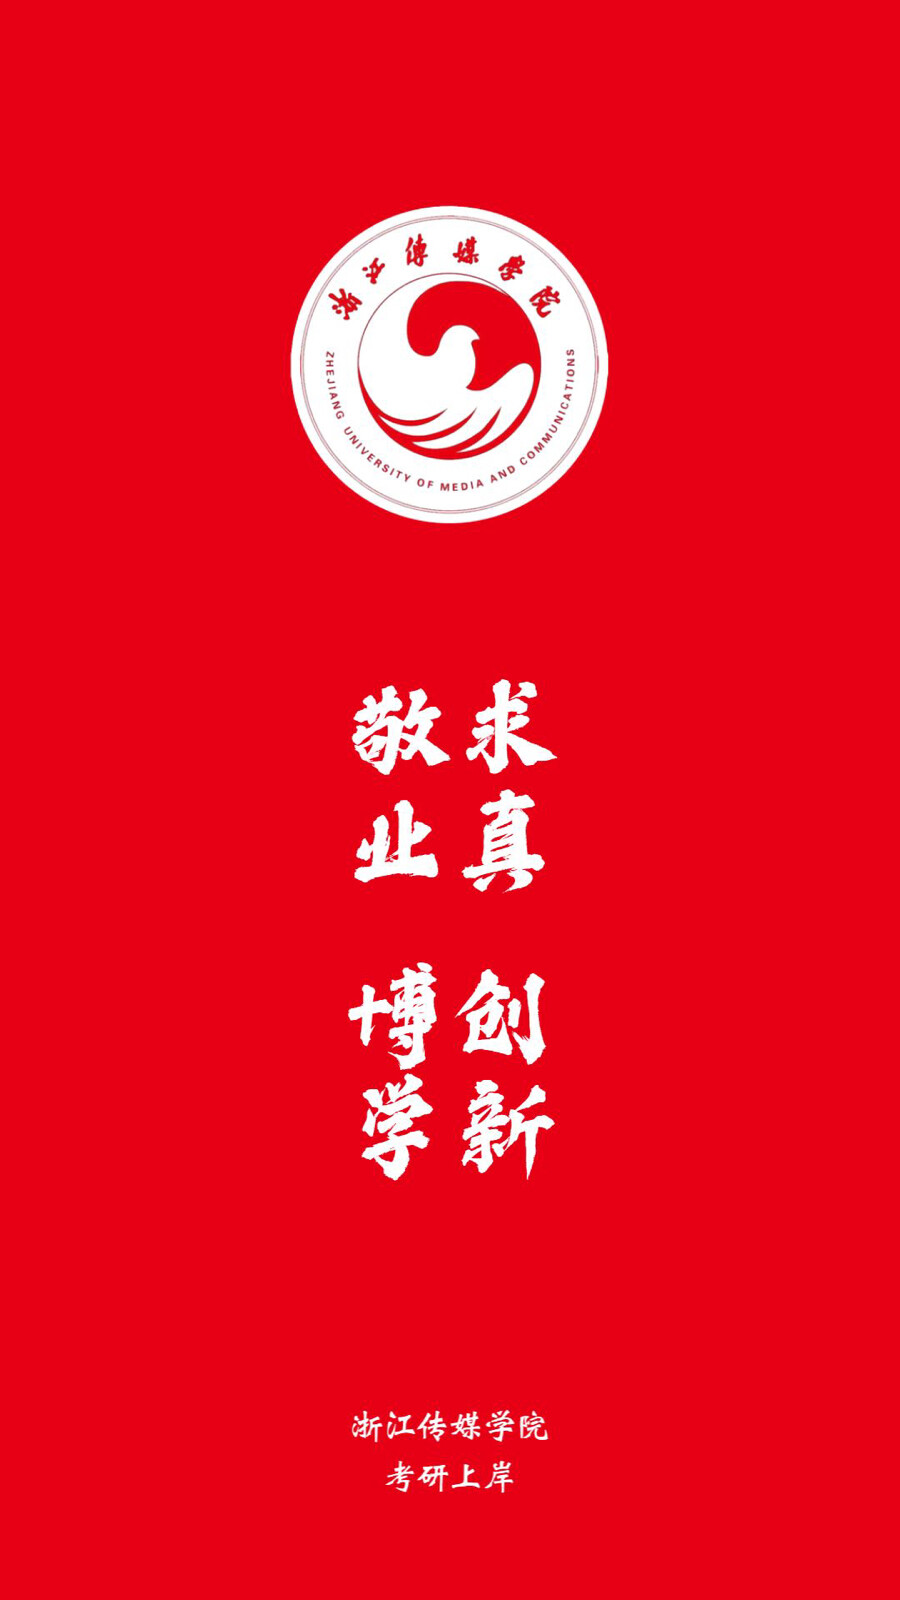 浙江传媒学院手机壁纸图片